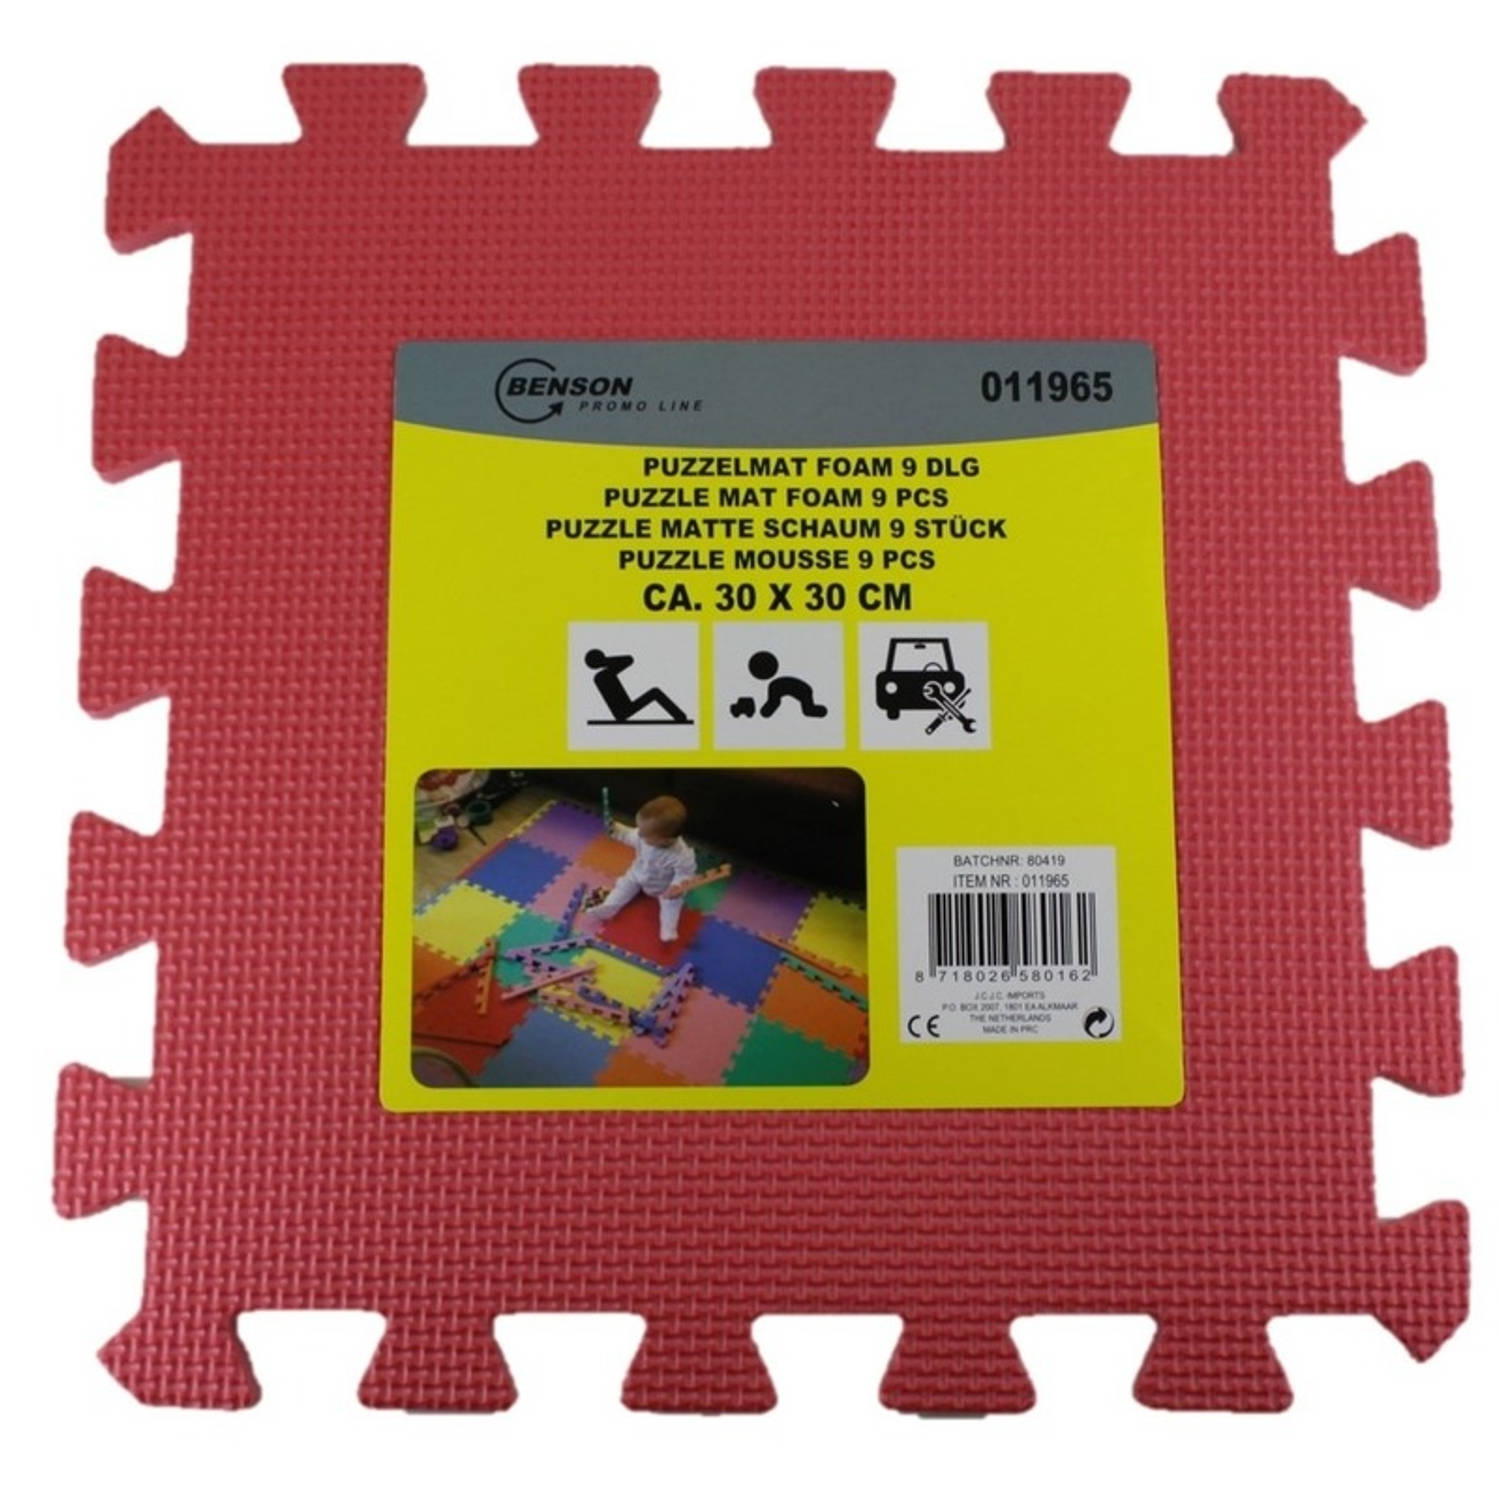 verkiezing schuld shit Puzzel speelmat foam tegels 30 x 30 cm roze 9 stuks - Speelkleden | Blokker